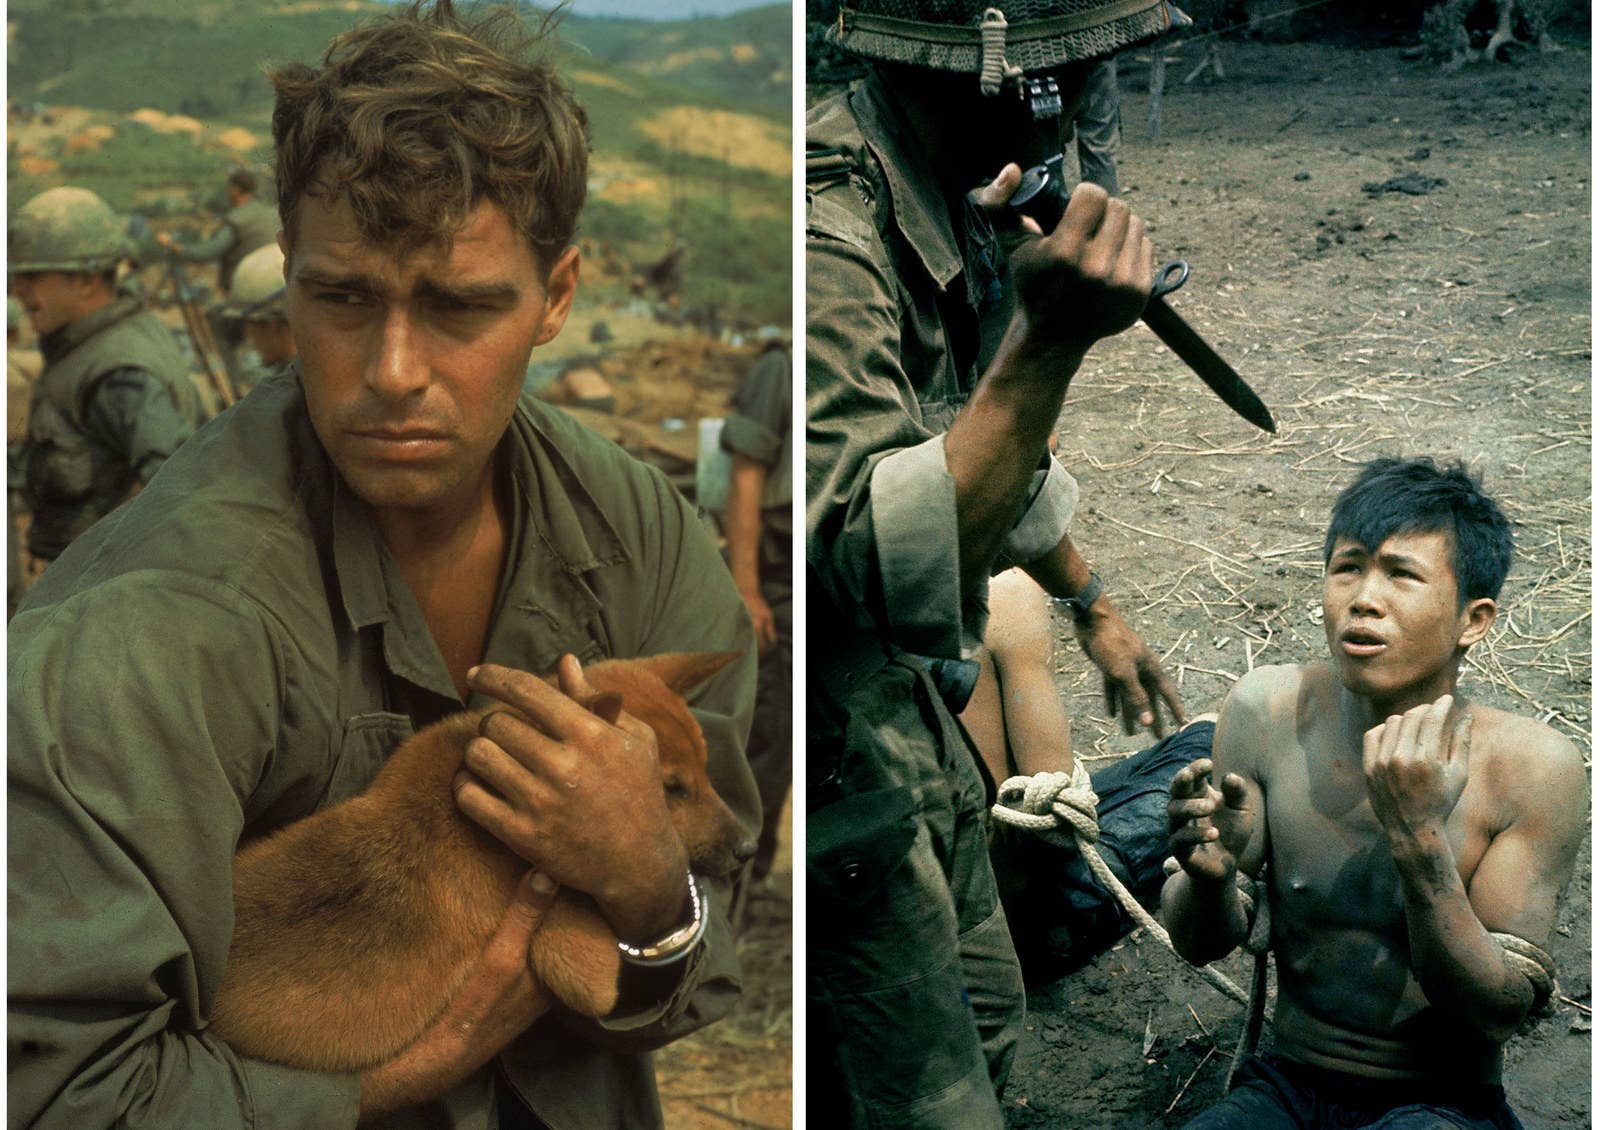 À esquerda, um soldado americano acaricia um cachorro durante um cerco em Khe Sanh, em 1968. À direita, soldado sul-vietnamita ameaça suspeito vietcongue com uma faca.